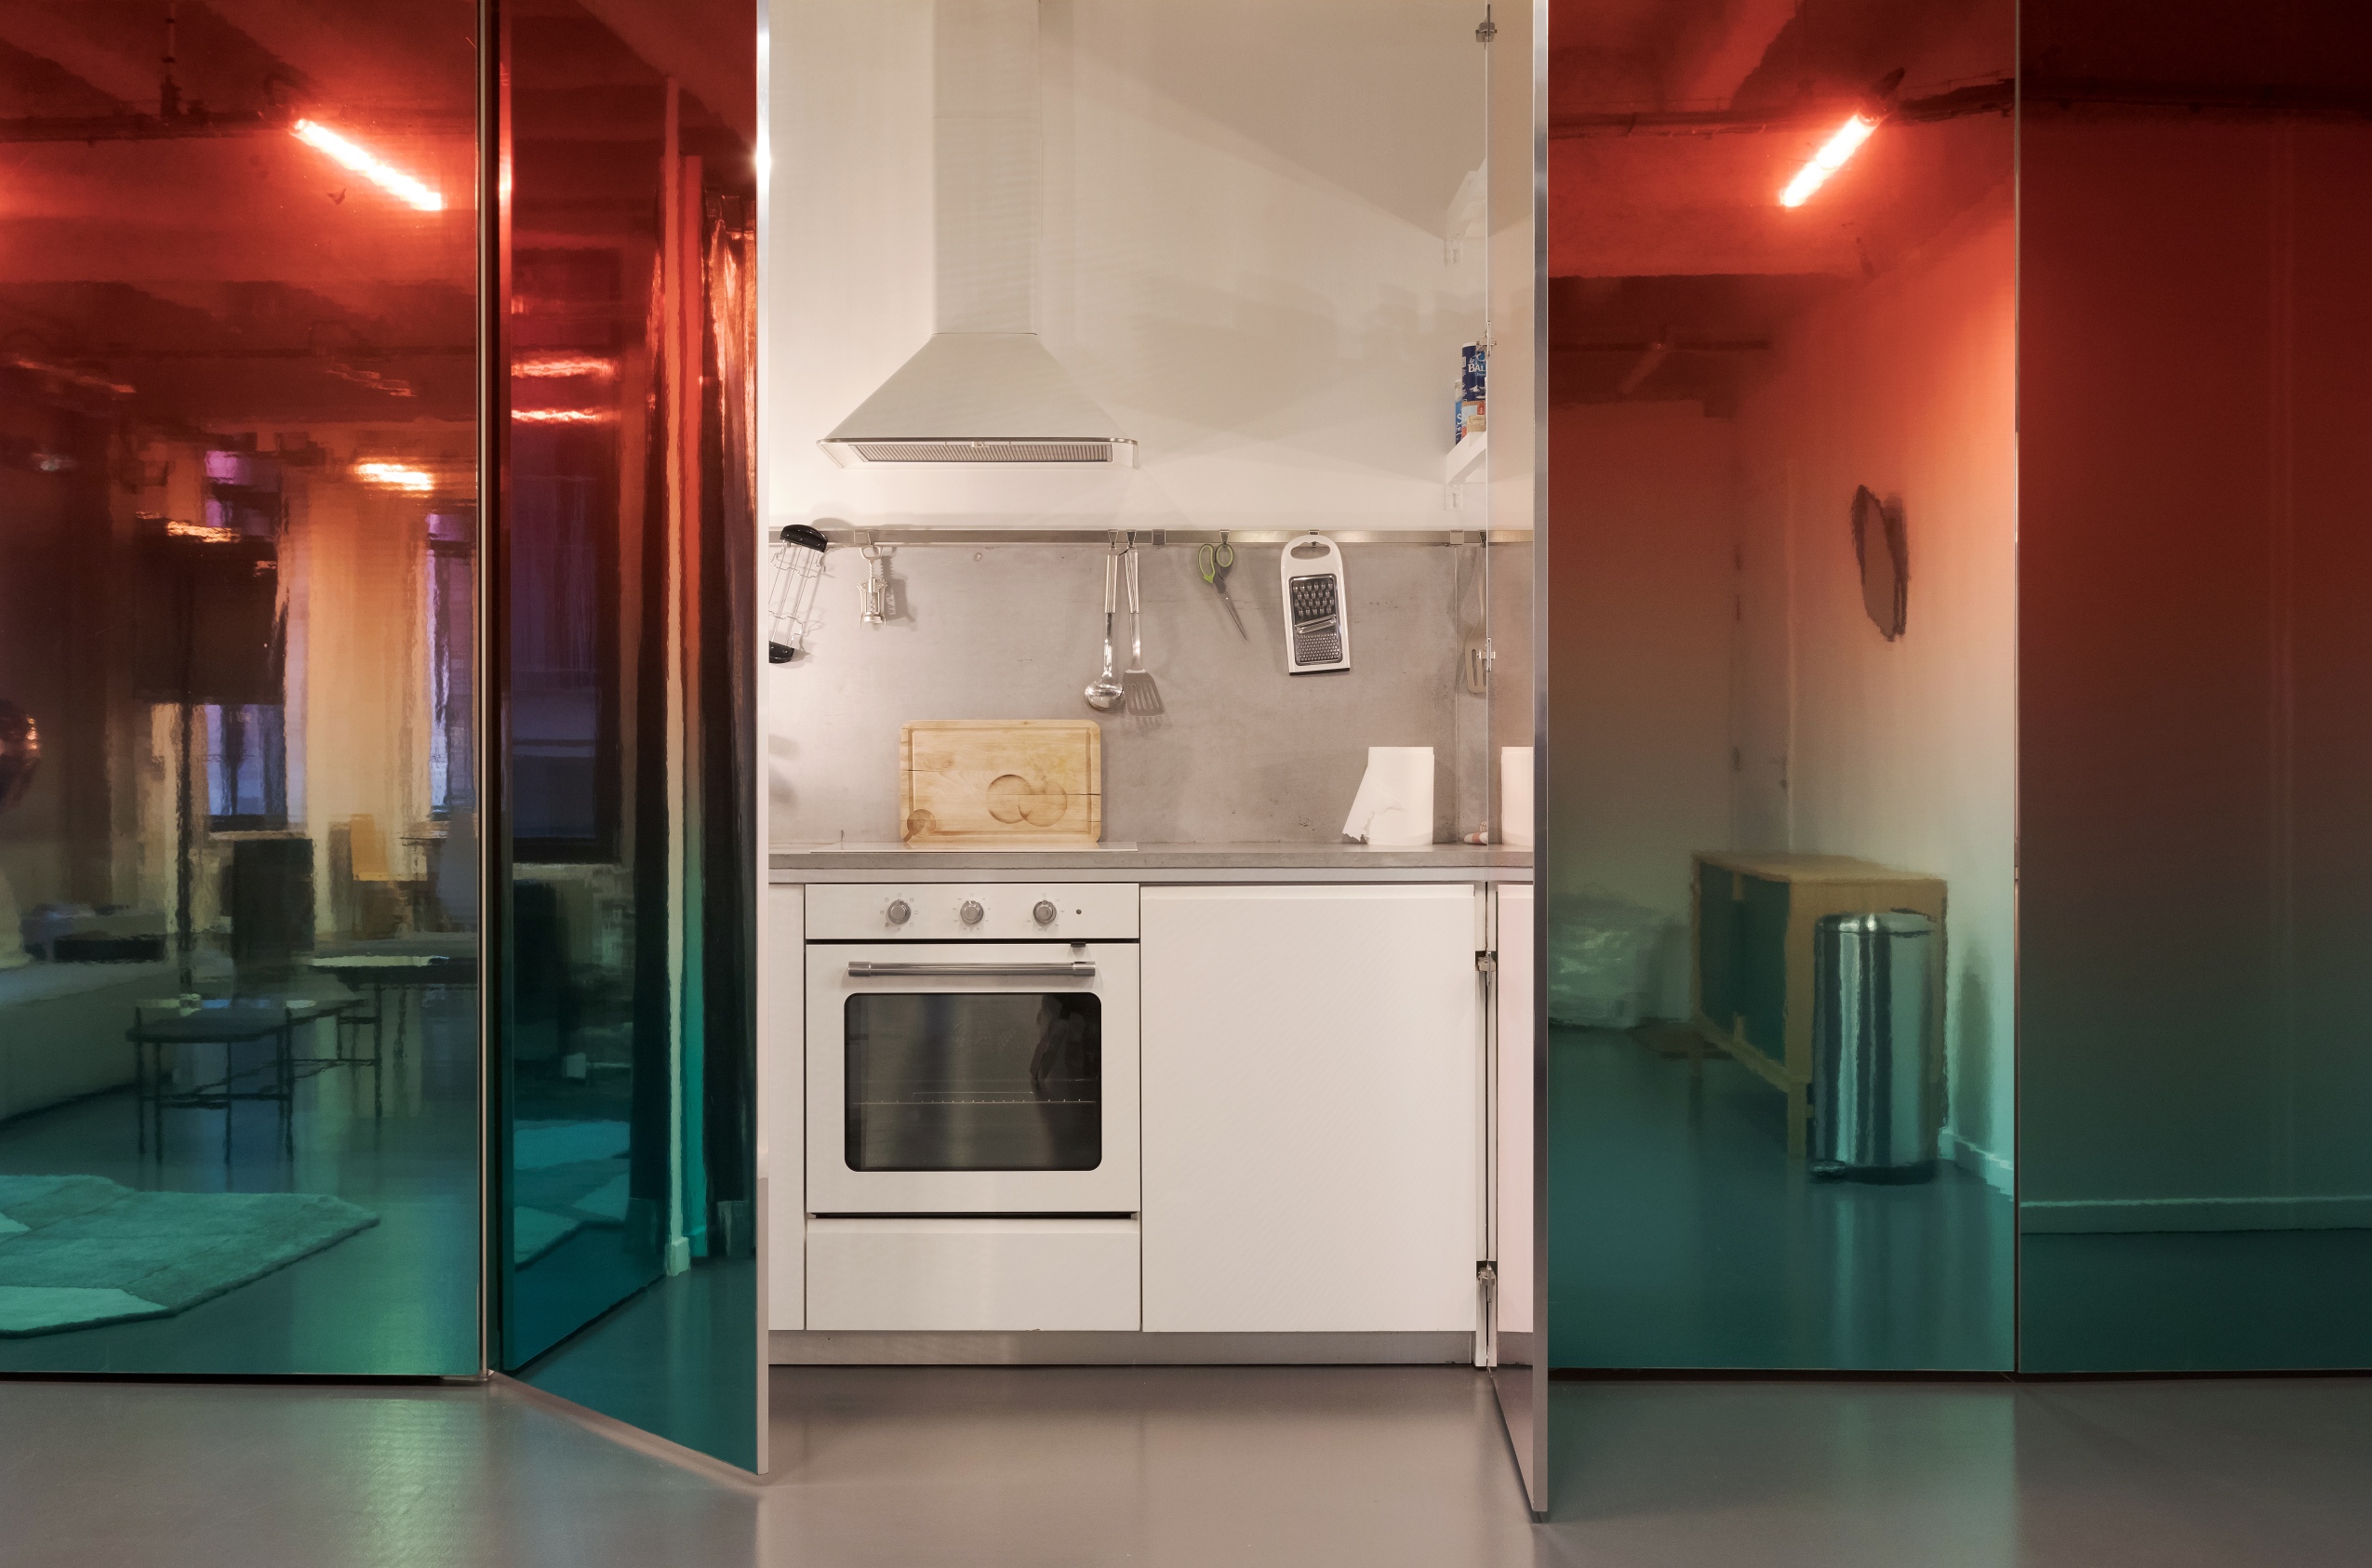 L’appartement des artistes est un espace brut dans lequel ont été conçus des modules fonctionnels (cuisine, chambre, salle de bain). Ces éléments sont masqués derrière un grand mur recouvert d’un miroir teinté d’un dégradé allant du rouge au bleu. Au centre, se dévoile une petite cuisine toute équipée.  